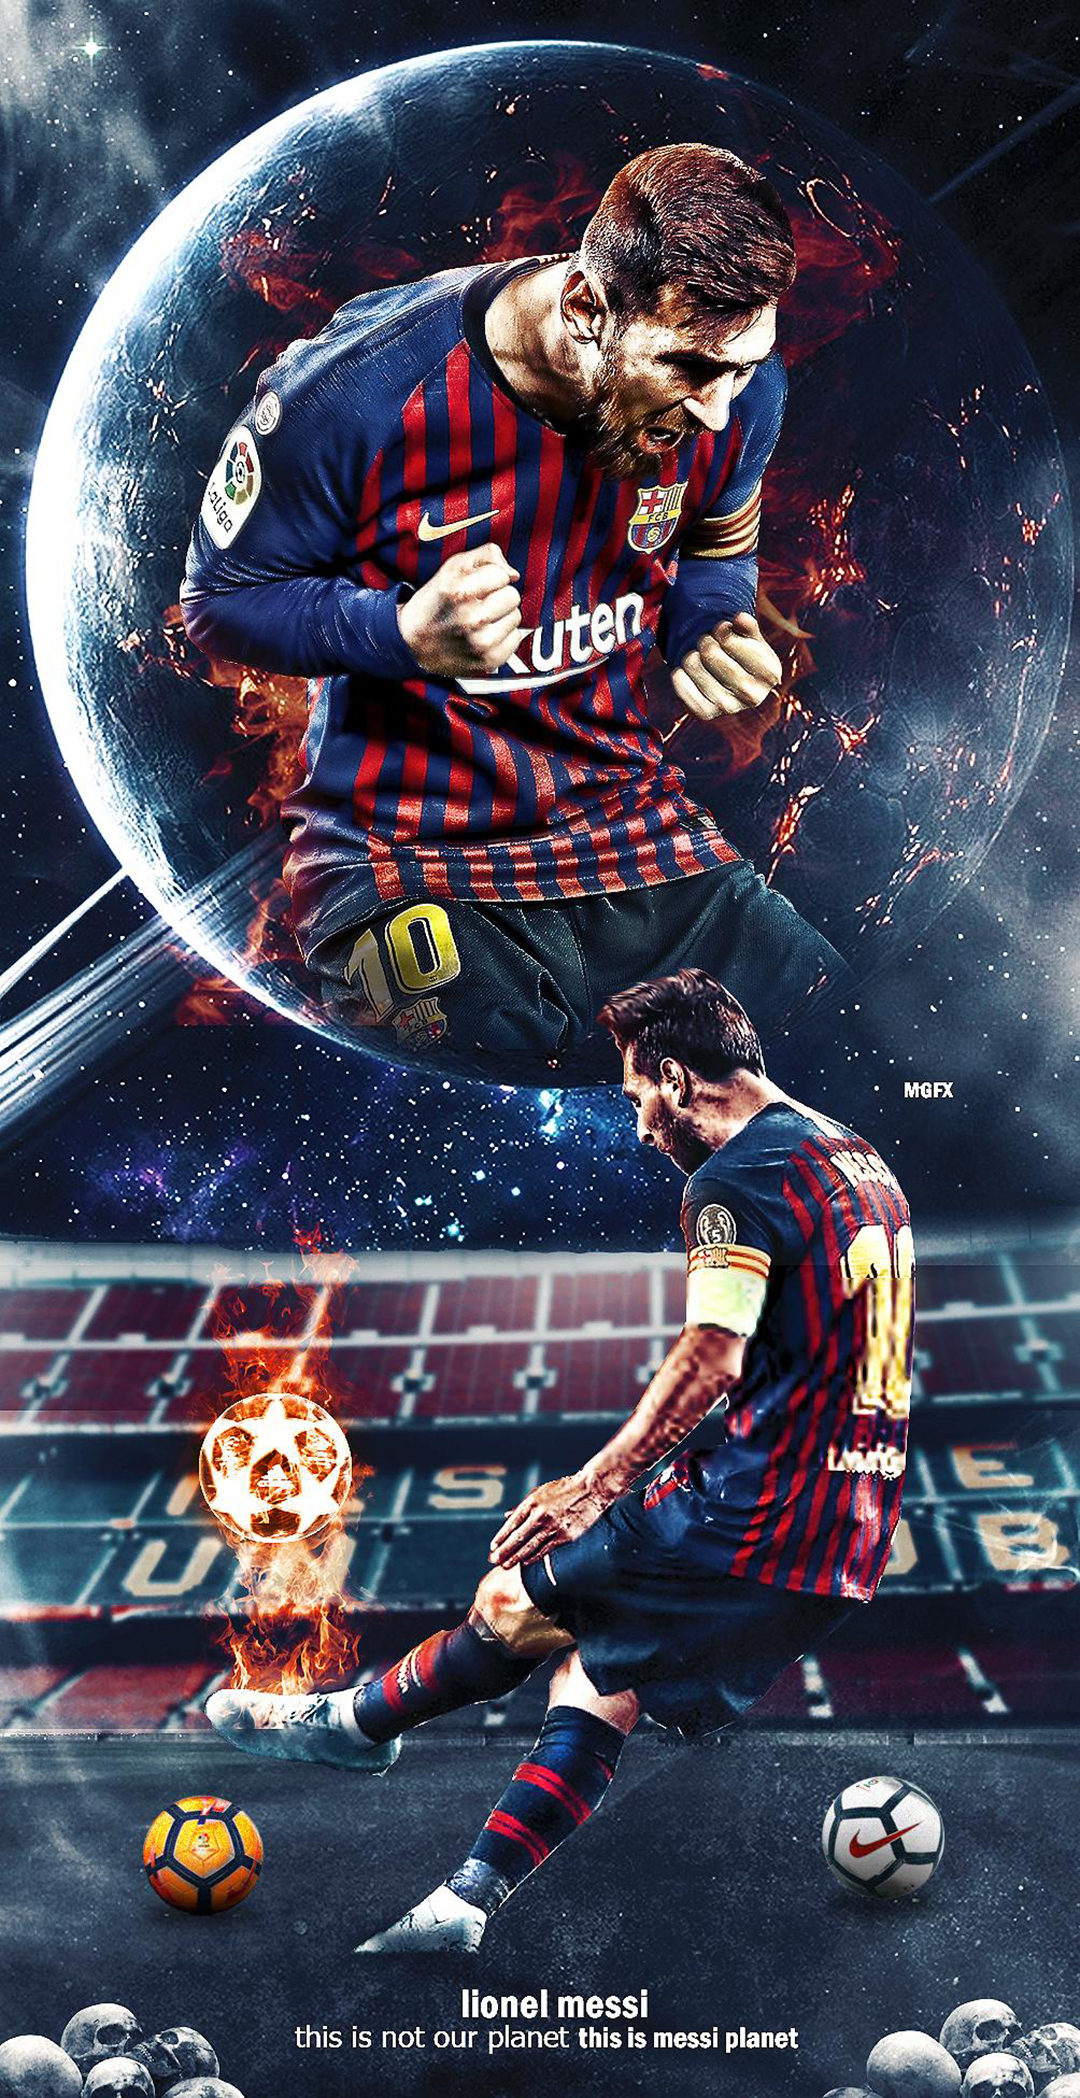 Messi ảnh nền: Cập nhật ngay ảnh nền với hình ảnh chân dung của cầu thủ Messi, ngôi sao bóng đá hàng đầu thế giới. Đem vẻ đẹp và sức hút của Messi đến cho màn hình của bạn và truyền cảm hứng cho ngày mới.